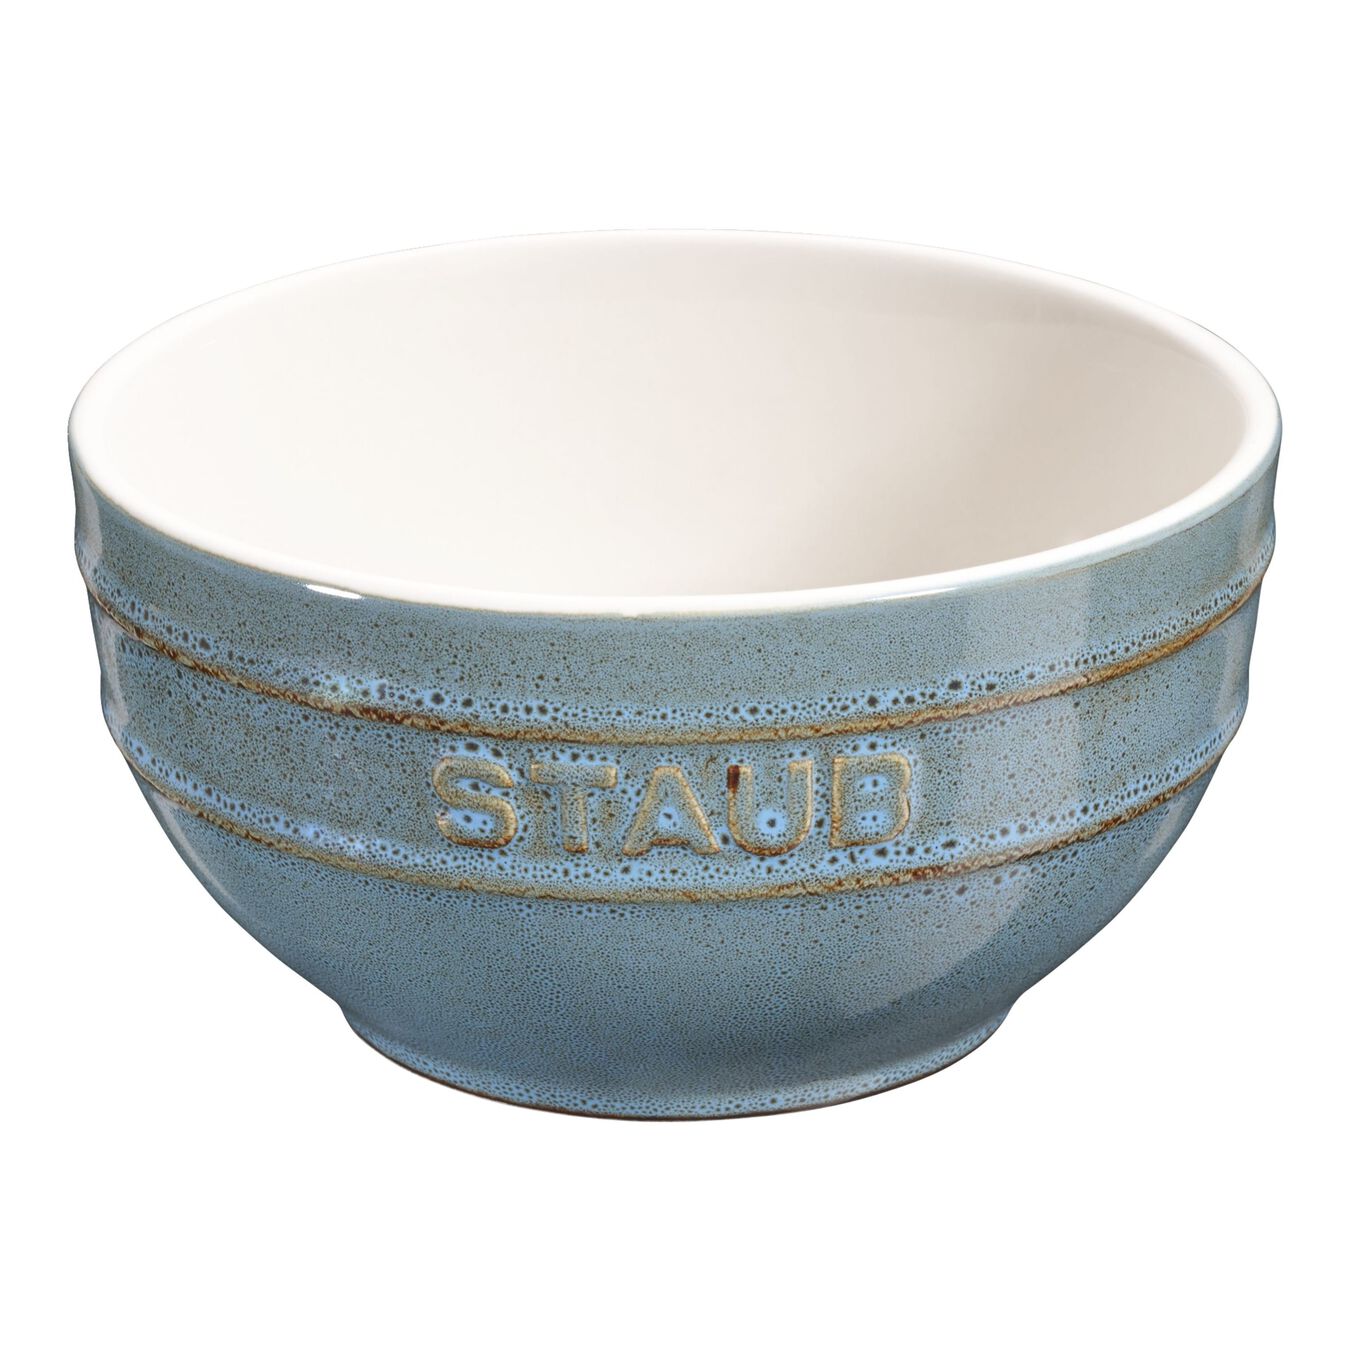 14 cm round Ceramic Bowl ancient-turquoise,,large 1